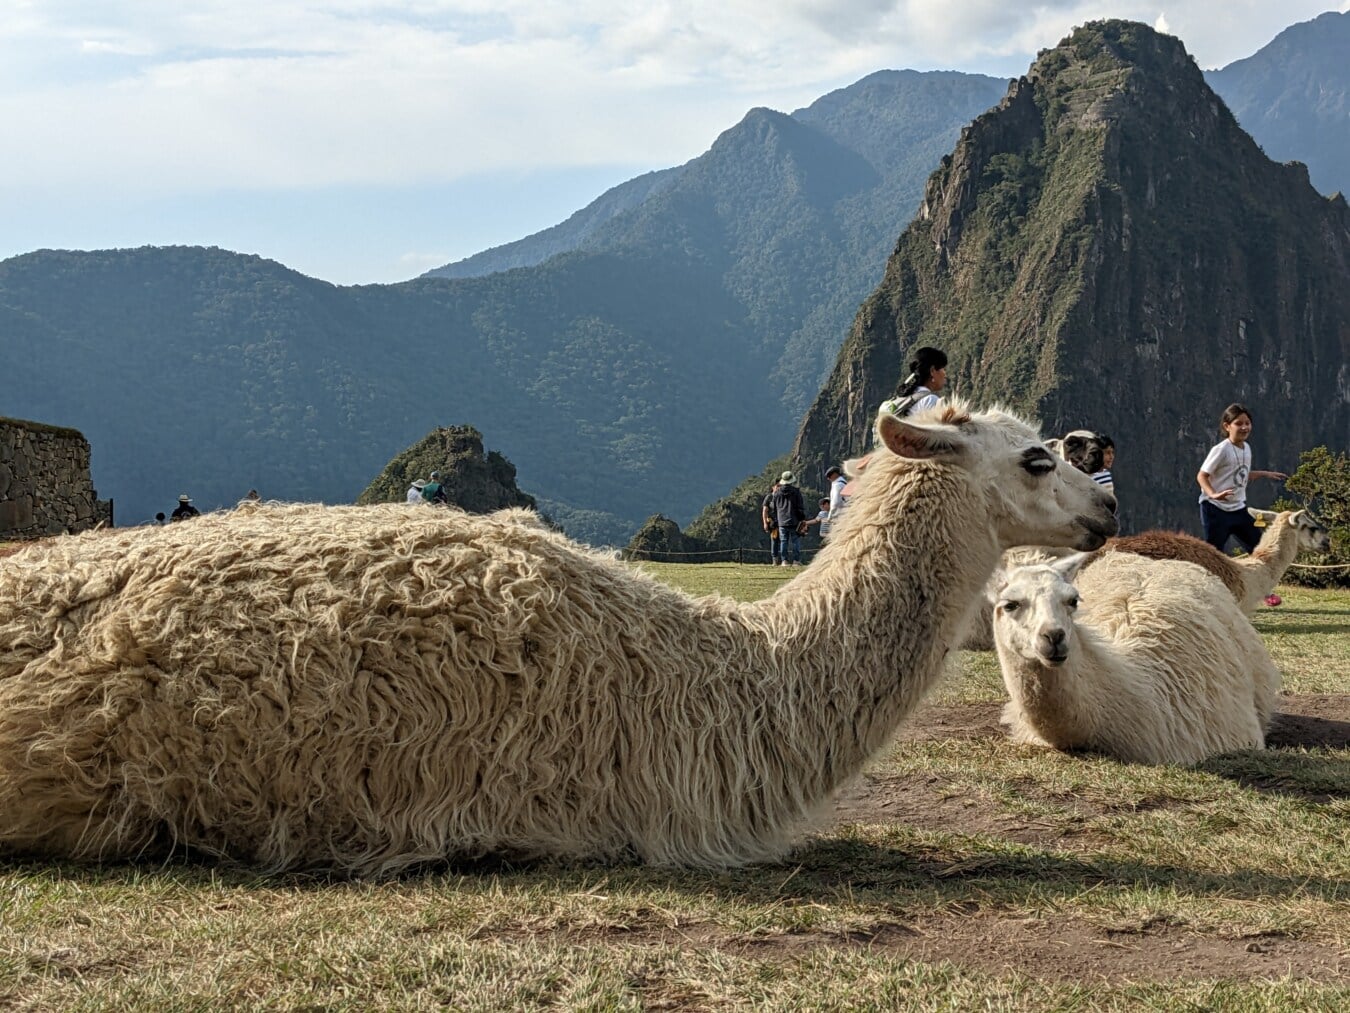 nâu nhạt, llama, mặt đất, lắp đặt, động vật, Peru, trong nước, chăn nuôi, núi, thiên nhiên